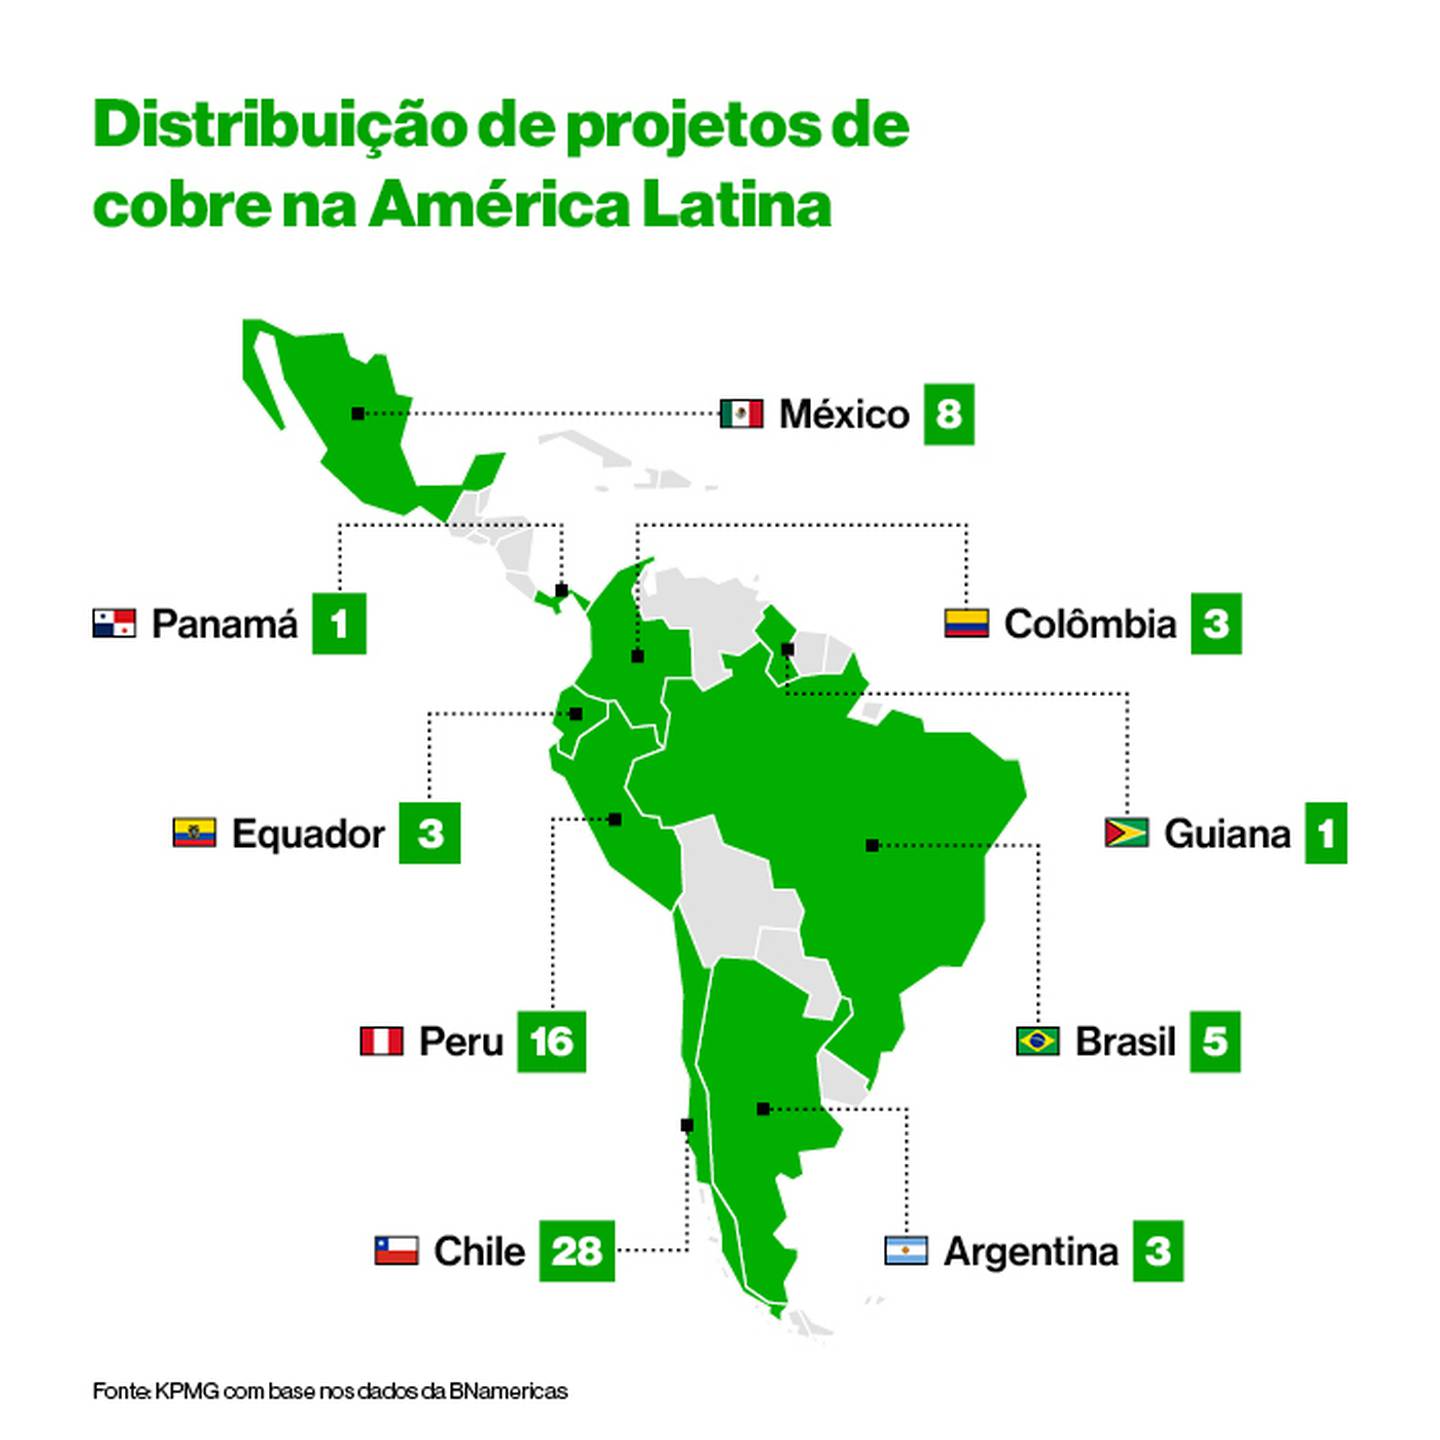 Número de projetos de exploração de cobre na América Latina (Fonte: Bloomberg Línea com dados da KPMG)dfd